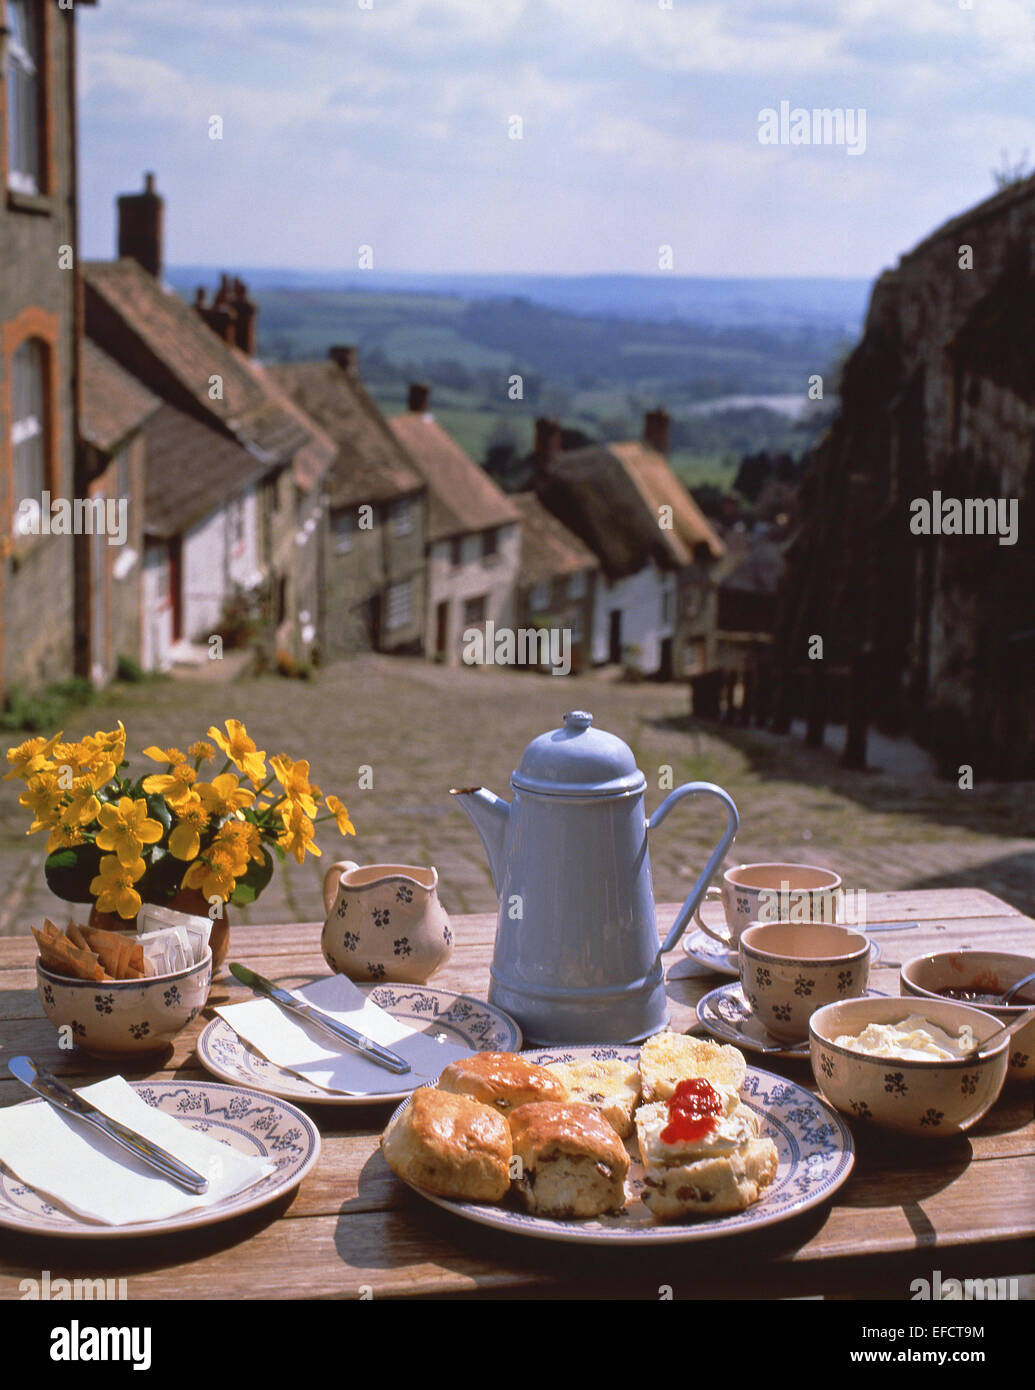 Pomeriggio tè alla crema sulla tabella nella parte superiore della Collina d'oro, Shaftesbury, Dorset, England, Regno Unito Foto Stock